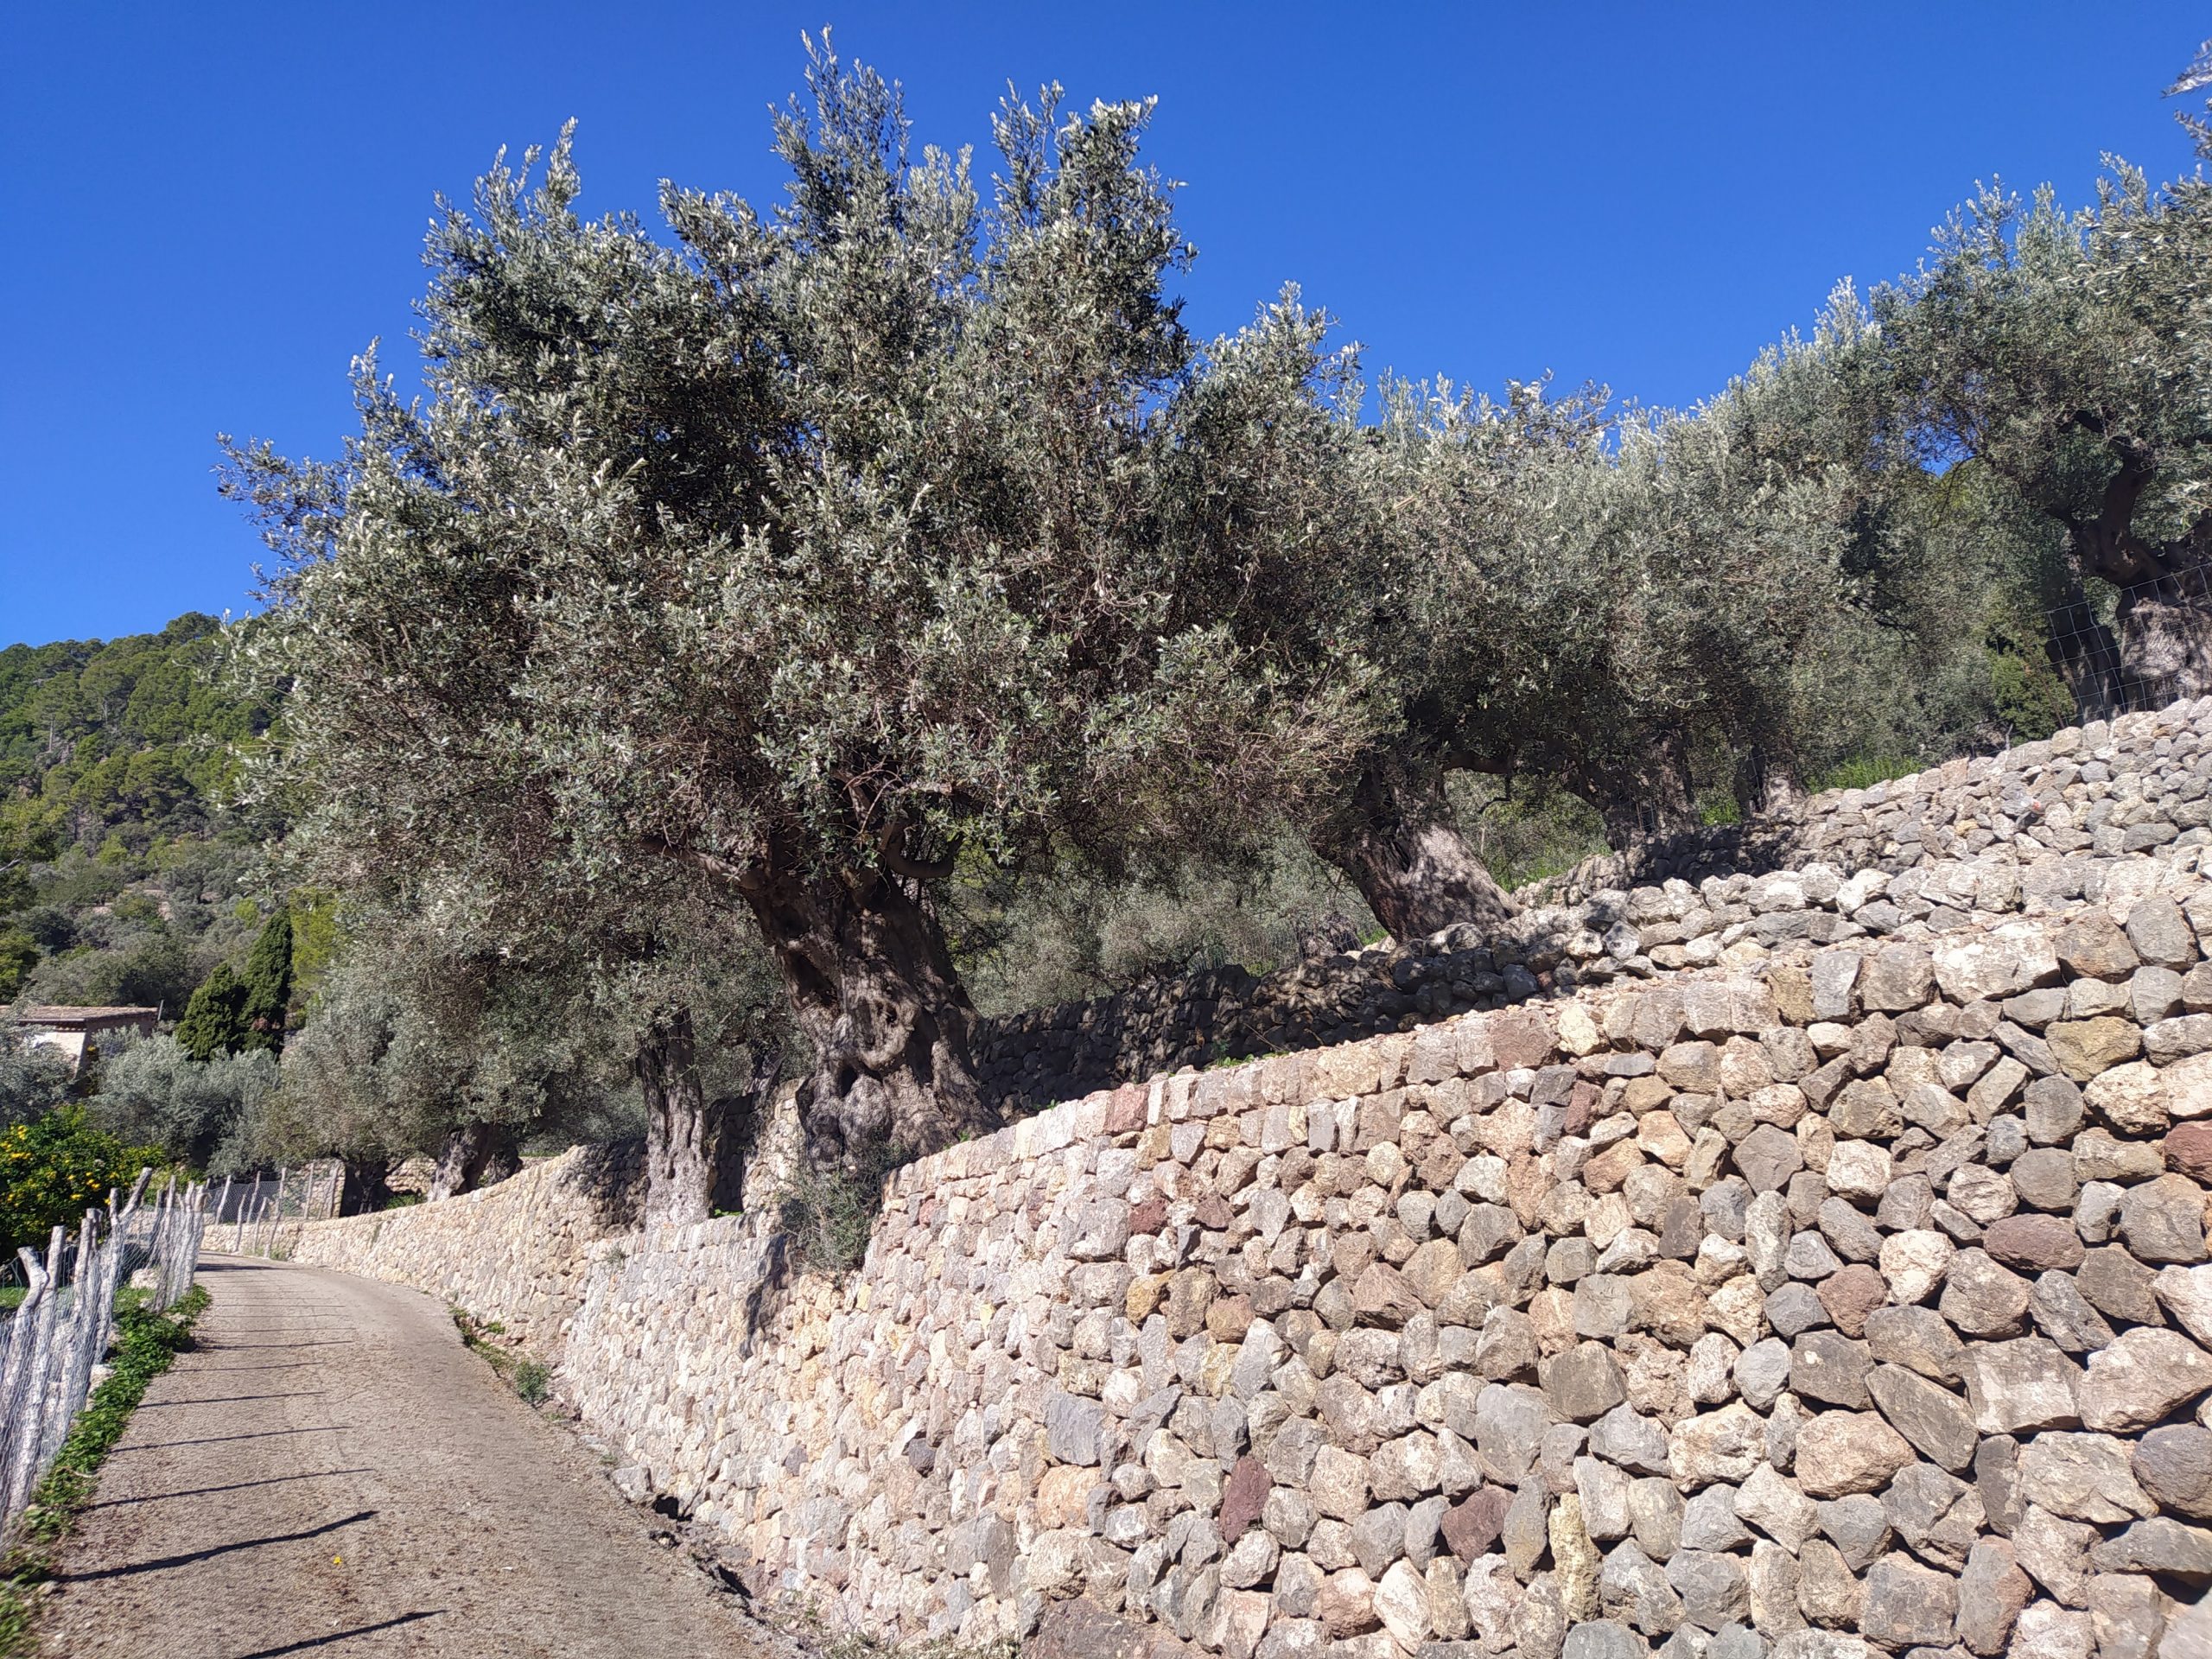 Els olivars de Mallorca han tancat una temporada excepcional, amb una producció històrica d’oliva, que els ha permès elaborar milers de litres d’oli en un moment que, precisament, aquest producte ha tocat sostre en el mercat espanyol, amb preus tan elevats que no s’havien vist mai fins ara. Després d’haver fet el càlcul oportú, els olivars adscrits a la Denominació d’Origen Oli de Mallorca han collit una xifra rècord de 6.052.758 quilograms d’oliva, que s’han convertit en 915.319 litres d’oli verjo, amb la garantia de qualitat que proporciona aquest segell. El president d’Oli de Mallorca, Joan Mayol, ha confirmat que es tracta de la producció més elevada en les poc més de dues dècades d’existència de la Denominació d’Origen. “Aquesta temporada hem aconseguit superar les xifres de l’anyada de 2017 i 2018, que varen ser de 5.367.000 quilograms d’oliva i 913.000 litres d’oli”. Mayol ha comentat que el producte ha tengut un rendiment inferior al d’anteriors temporades, però ha qualificat la collita d’excel·lent. Tot i així, s’han batut rècords tant en oliva collida com en oli exprimit, recalca. La meteorologia, a favor Tot això, diu, ha estat possible gràcies a l’ajuda de diversos factors meteorològics. La tempesta Juliette, del febrer de 2023, va ser una injecció molt important d’aigua per a les oliveres, malgrat que en alguns olivars sí que va causar destrosses. Després va arribar una primavera que no va destacar per ser calorosa, un factor que va propiciar que la flor aferràs bé i no se’n perdés gaire. Mayol continua enumerant que l’estiu va ser calorós i va espantar la plaga de la mosca, i que els arbres han tengut humitat suficient en els moments que l’han necessitat. “La conjunció de tots aquests factors ens ha anat a favor”, recalca el president de la Denominació d’Origen. En aquest moment més de 1.100 productors de diferents zones de Mallorca formen part d’aquesta Denominació d’Origen. Sumen més de 4.100 hectàrees de terreny on hi conreen, fonamentalment, les varietats d’oliva mallorquina, arbequina i picual, que són les admeses per la normativa de la Denominació d’Origen. També compten amb una quinzena de tafones autoritzades i amb una vintena d’empreses envasadores del producte. Mallorca viu en aquest moment un boom de producció d’oliva, després de la sembra de noves superfícies arran de l’aparició de la Denominació d’Origen. La superfície de conreu està estabilitzada des de l’any 2018, després d’uns anys de ràpid creixement, tot i que no està estancada i continua creixent lleugerament d’any en any. Tot i tenir en compte aquest factor, la temporada que ara es tanca serà de rècord per l’excel·lent càrrega de fruit dels arbres. Aproximadament el 80% d’aquesta producció quedarà per al consum intern a les Illes Balears, mentre que la resta viatjarà fonamentalment a Alemanya.